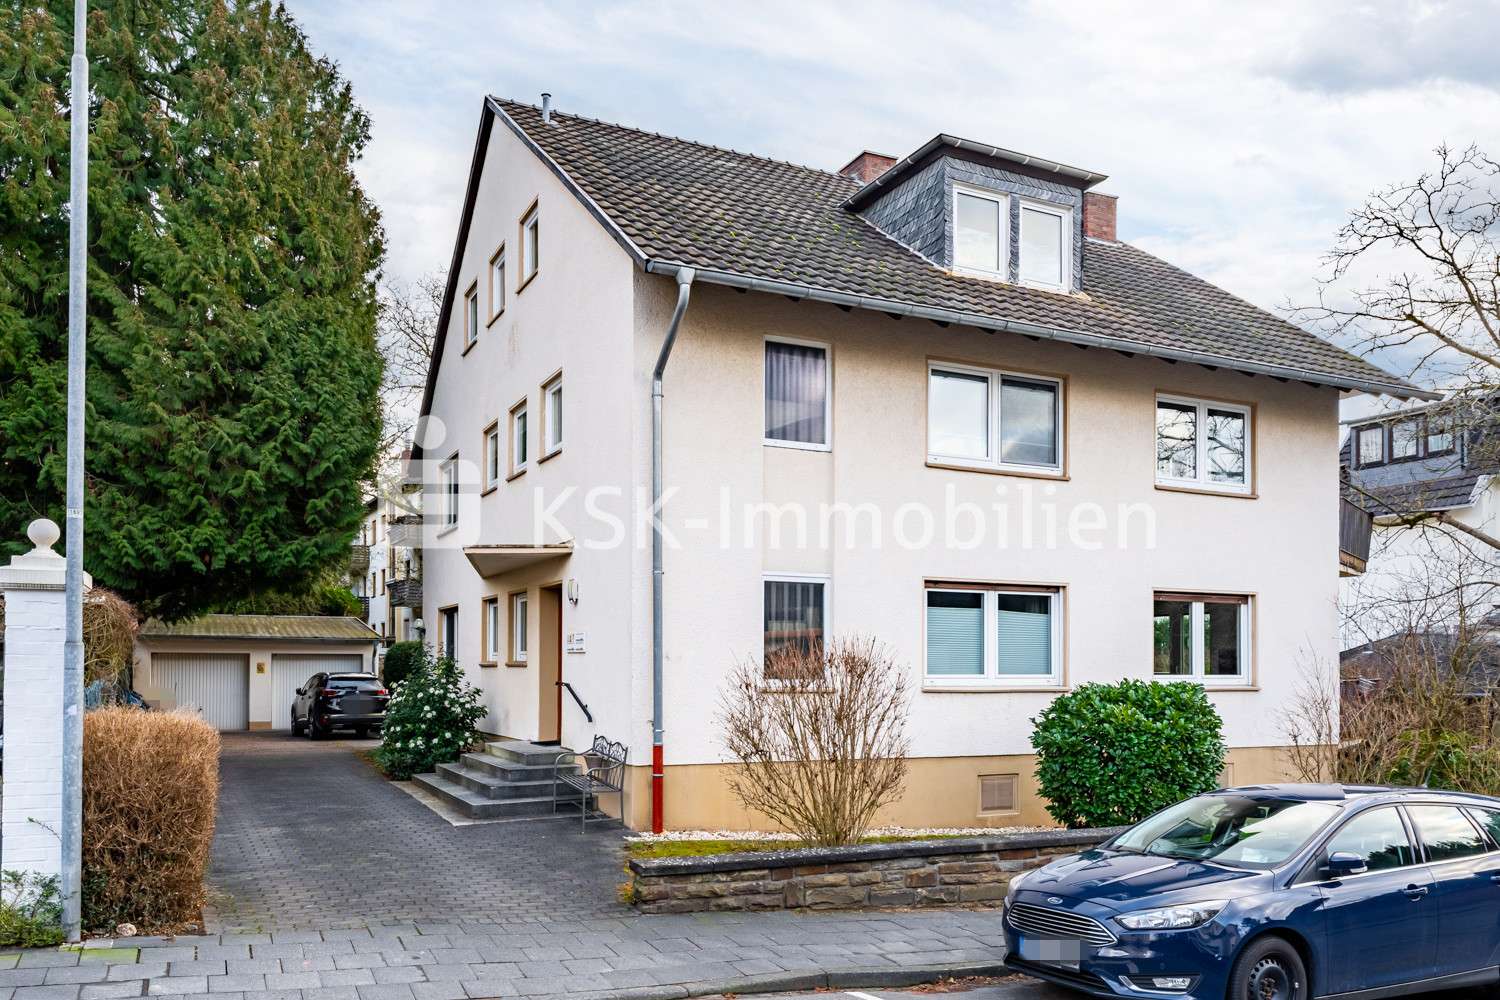 114695 Außenansicht - Mehrfamilienhaus in 53604 Bad Honnef mit 286m² als Kapitalanlage günstig kaufen